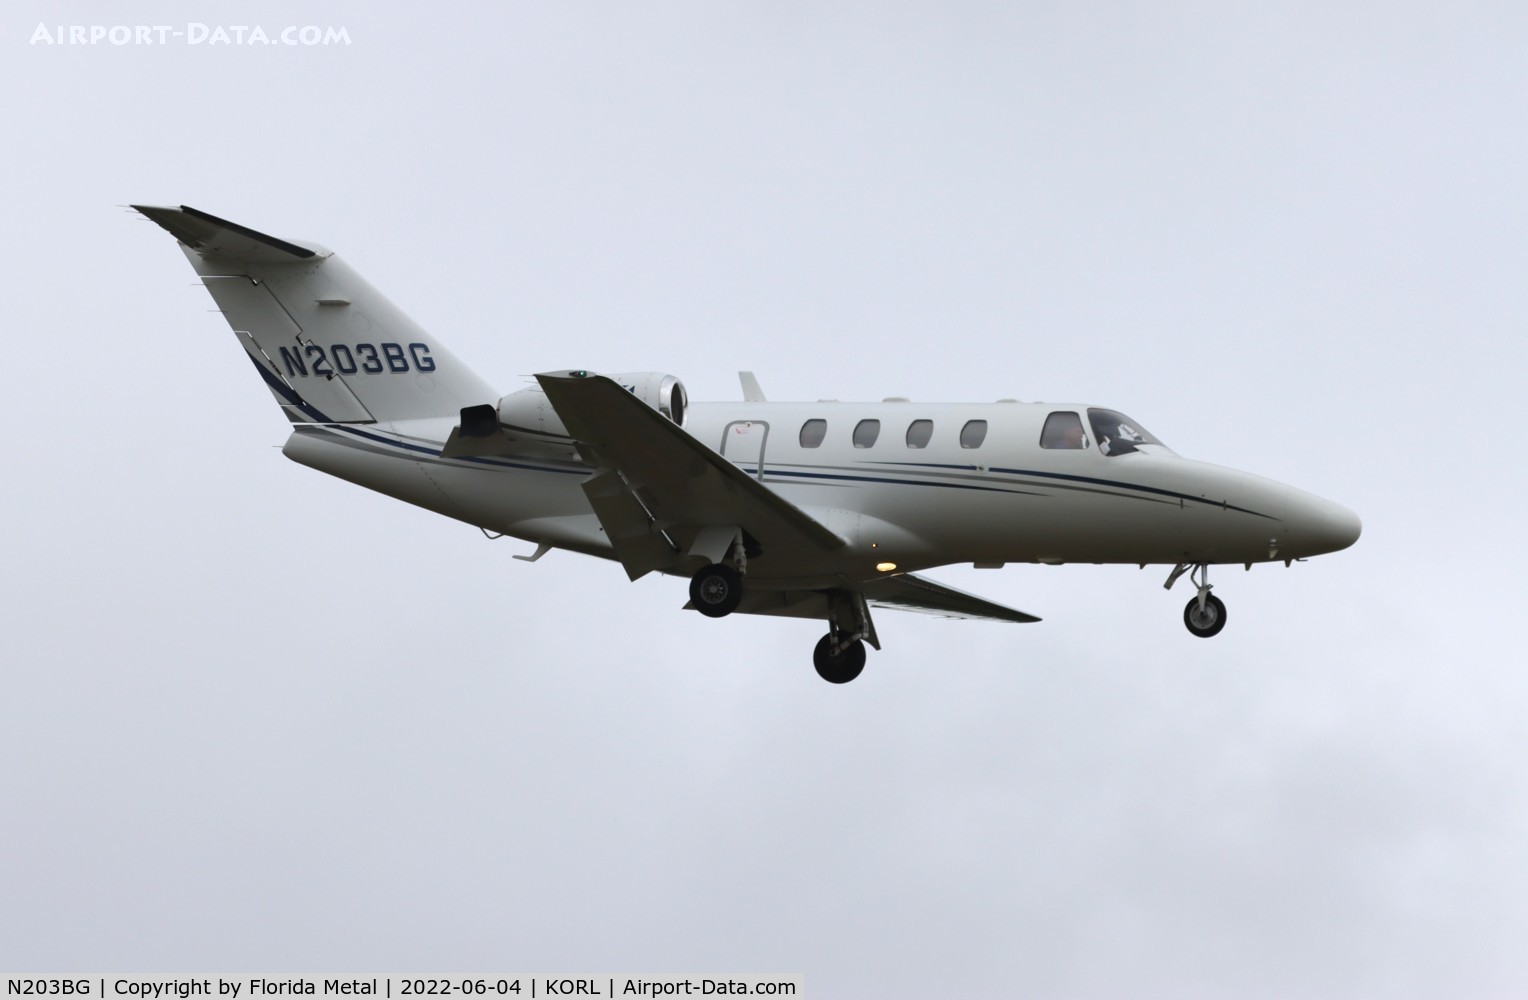 N203BG, 2000 Cessna 525 CitationJet CJ1 C/N 525-0378, Special Olympics 2022